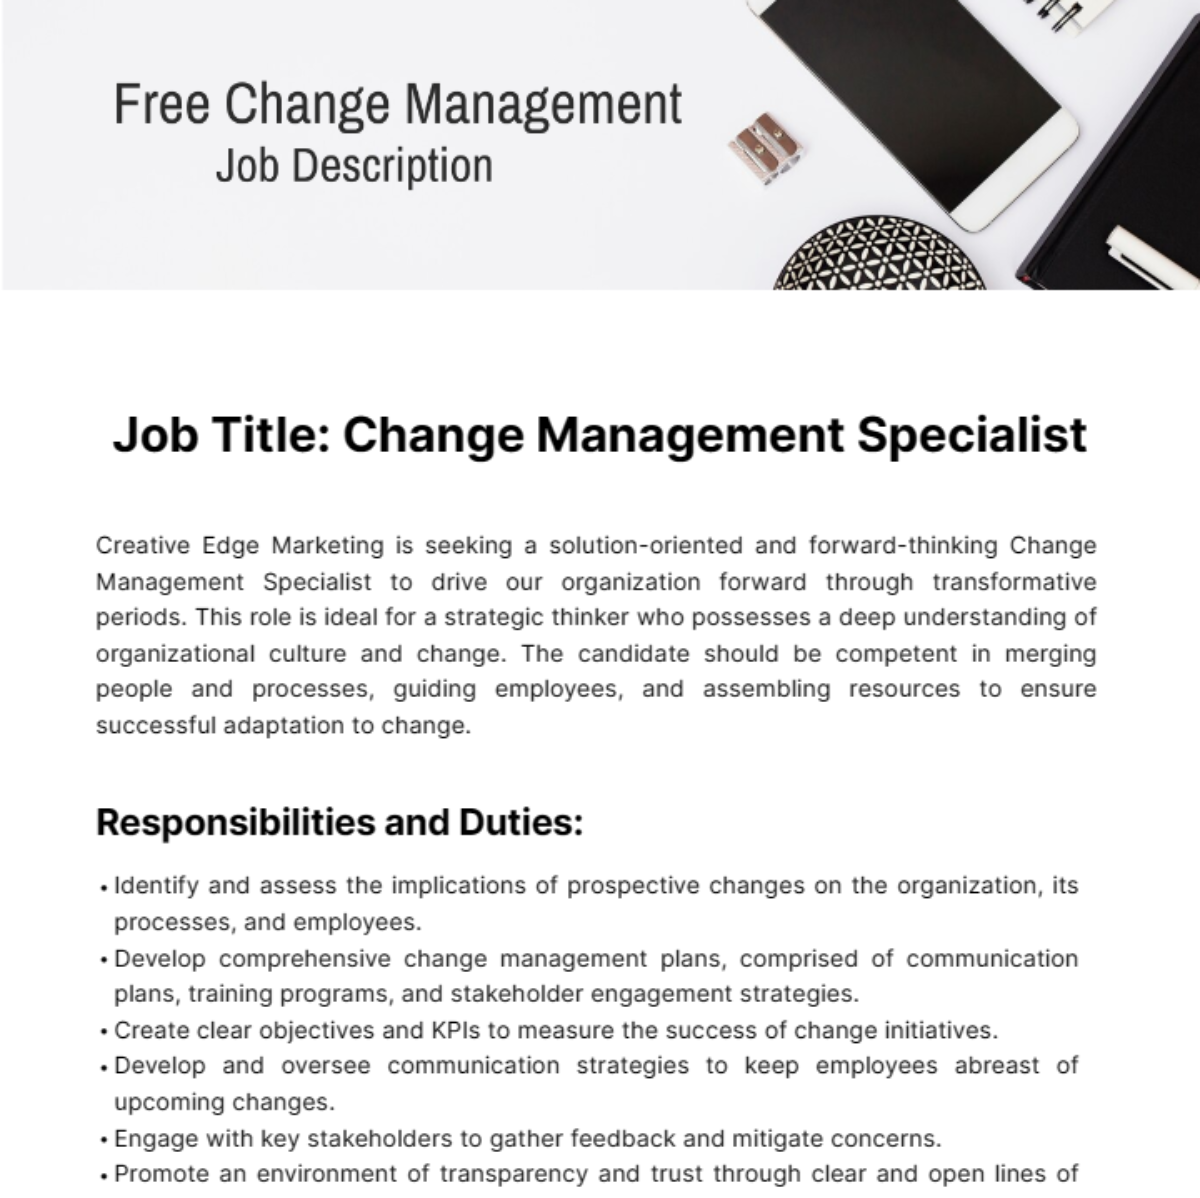 Free Change Management Job Description Template